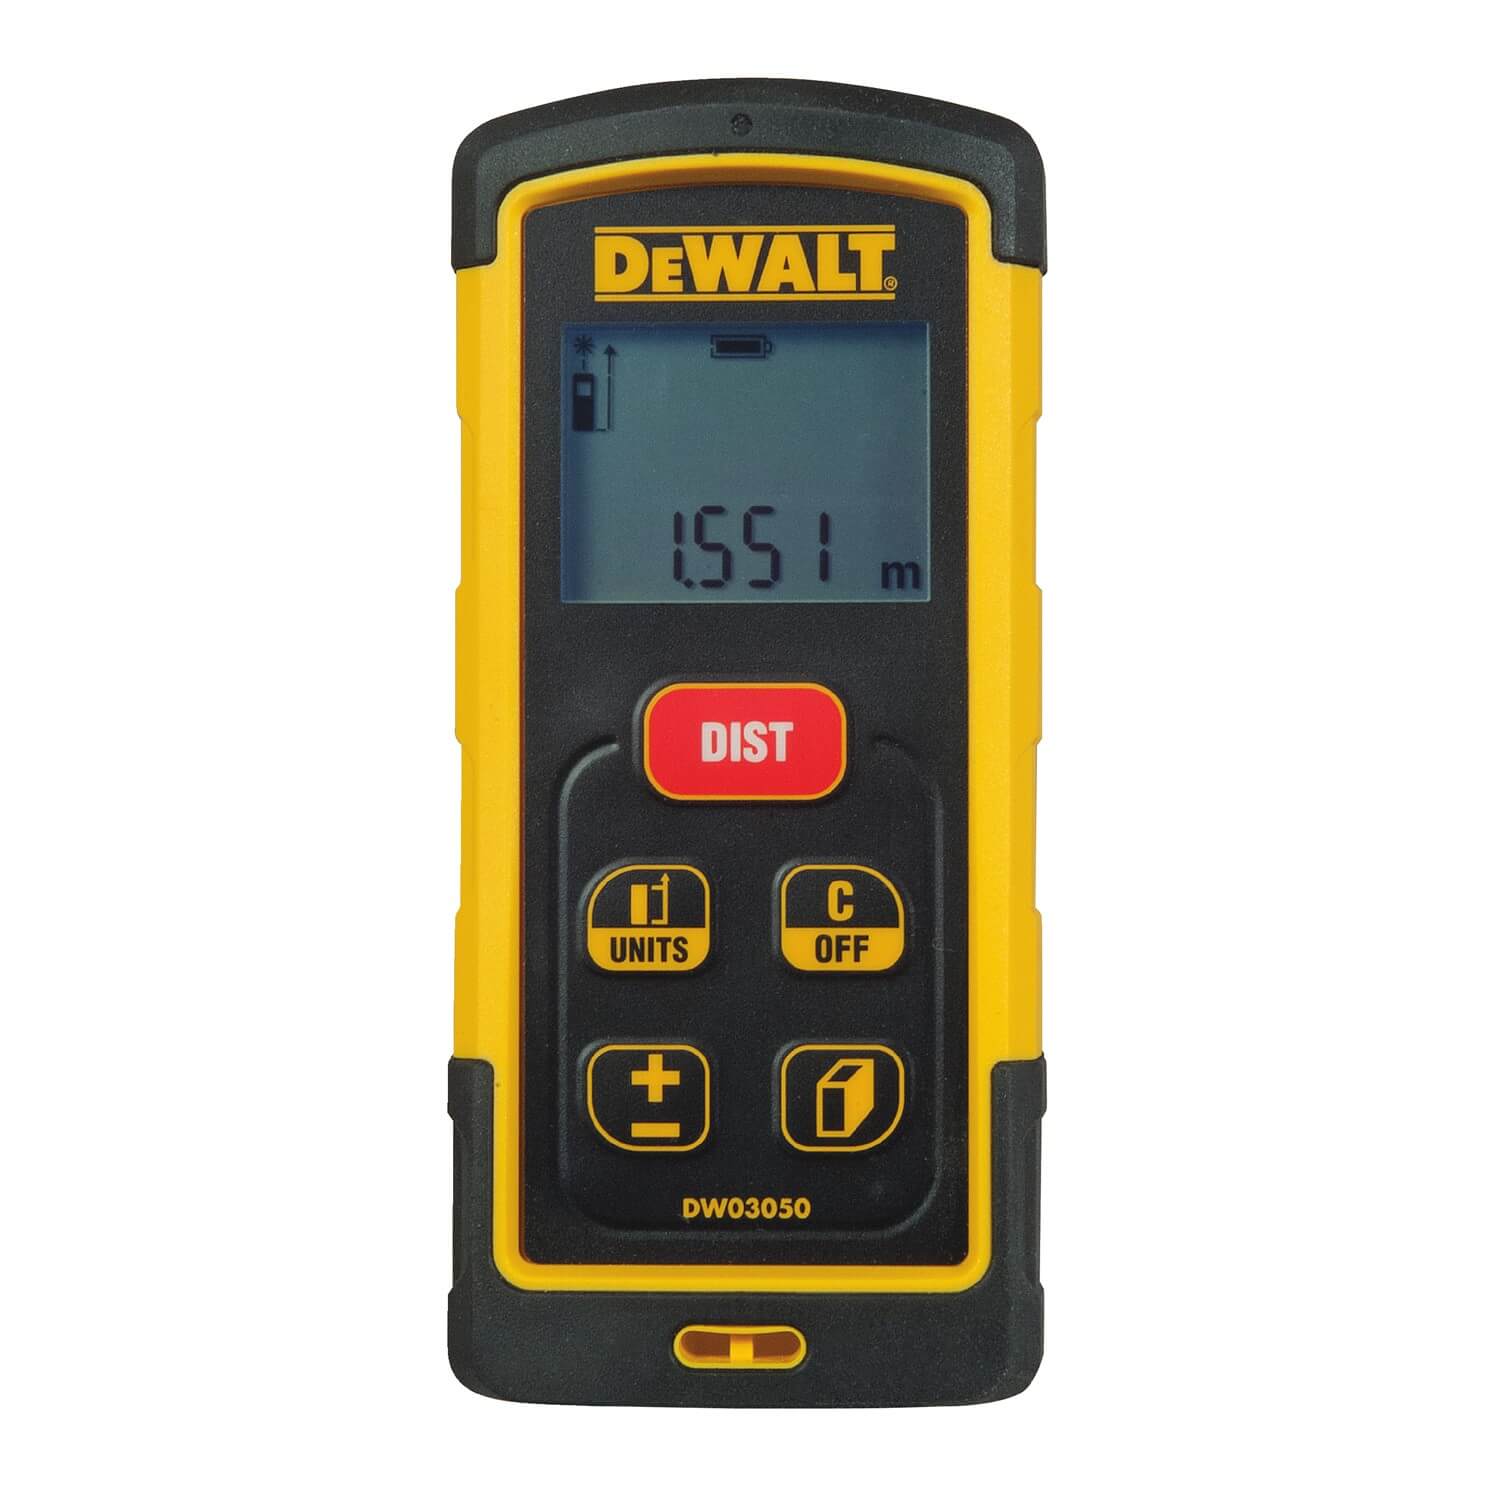 DEWALT DW03050 165-Feet Laser Distance Measurer - wise-line-tools